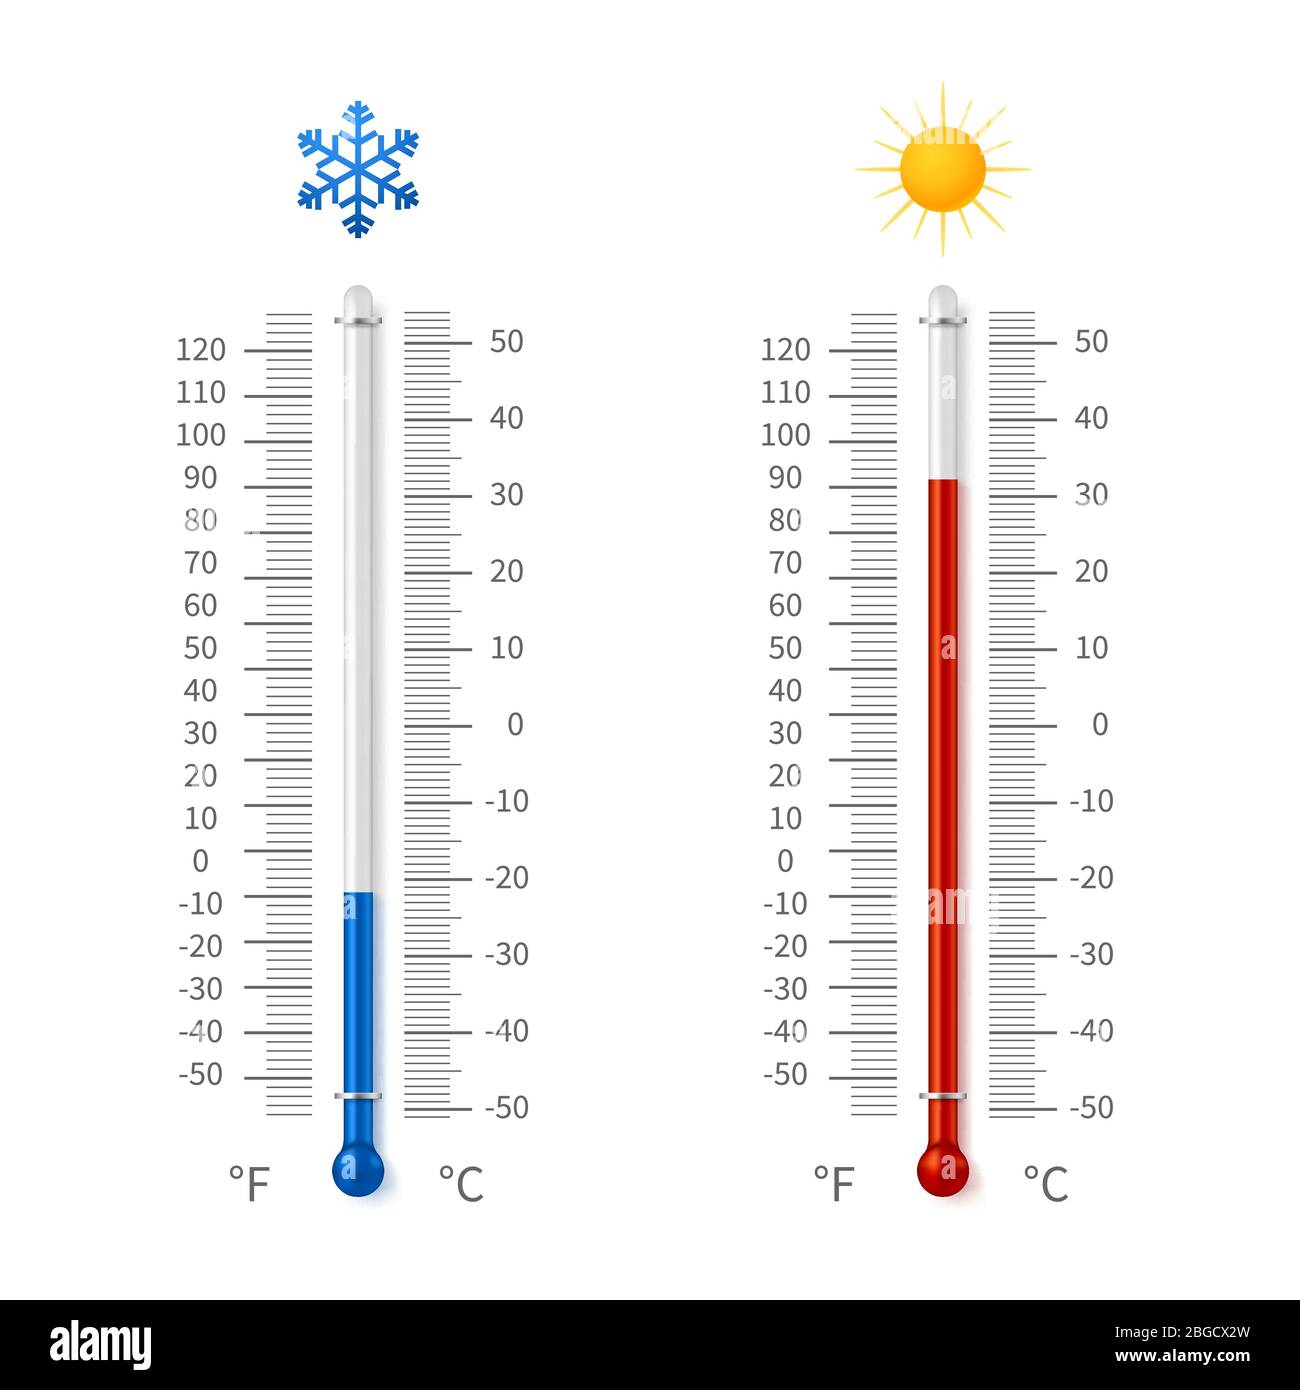 Symbole für die Temperatur bei heißem und kaltem Wetter. Meteorologie-Thermometer mit vektor-Darstellung im grad celsius und fahrenheit. Messung von fahrenheit und grad celsius Stock Vektor